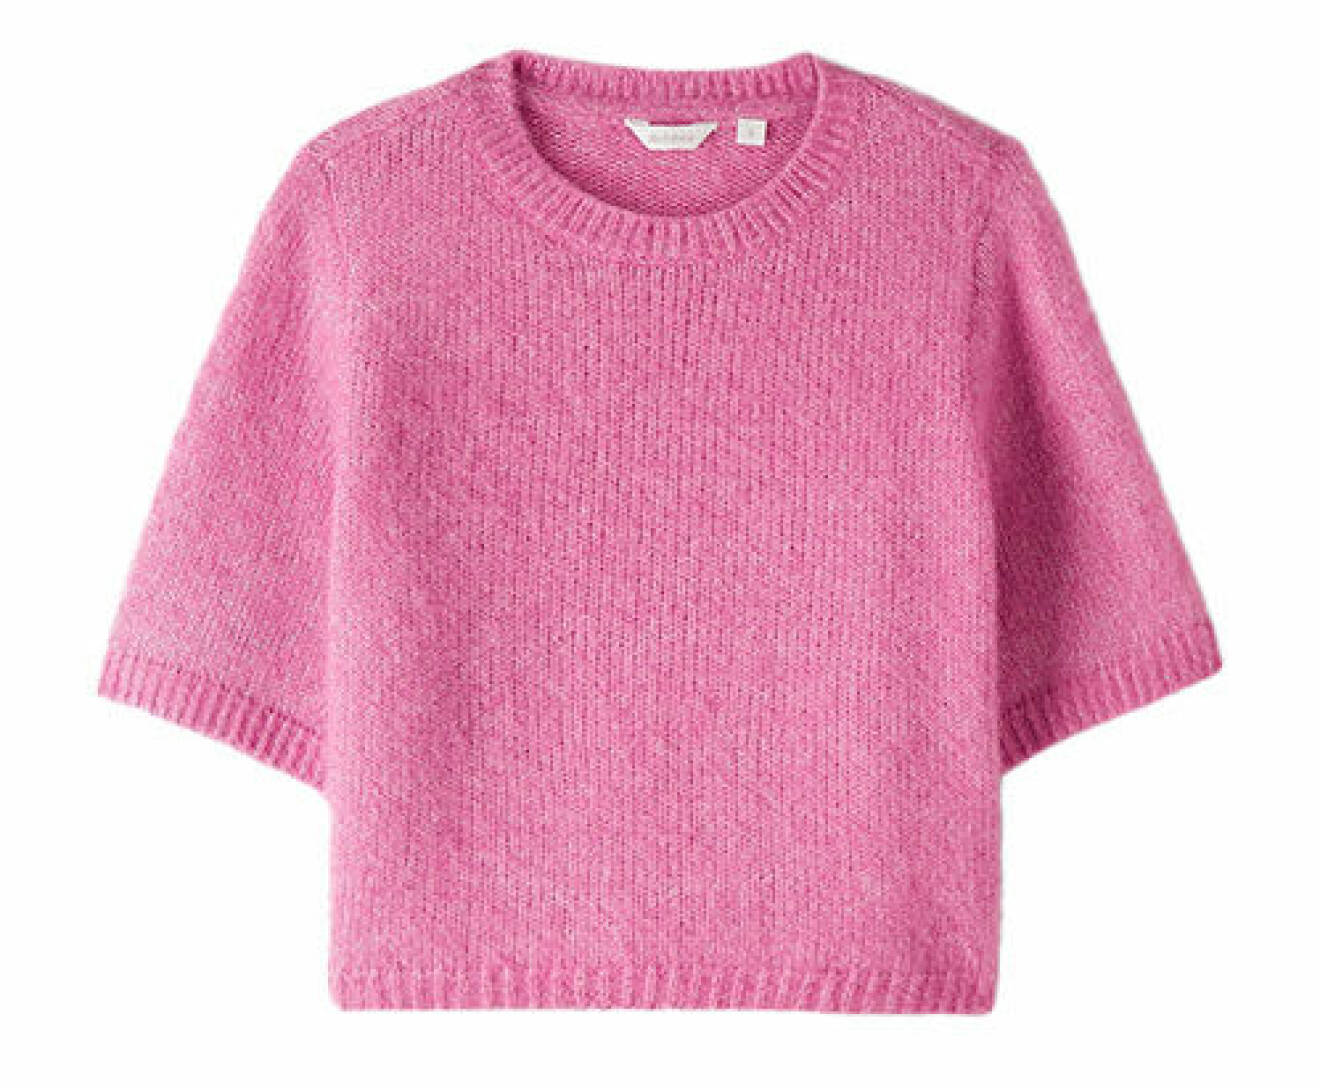 Kortärmad stickad tröja i en rosa nyans från Dobber